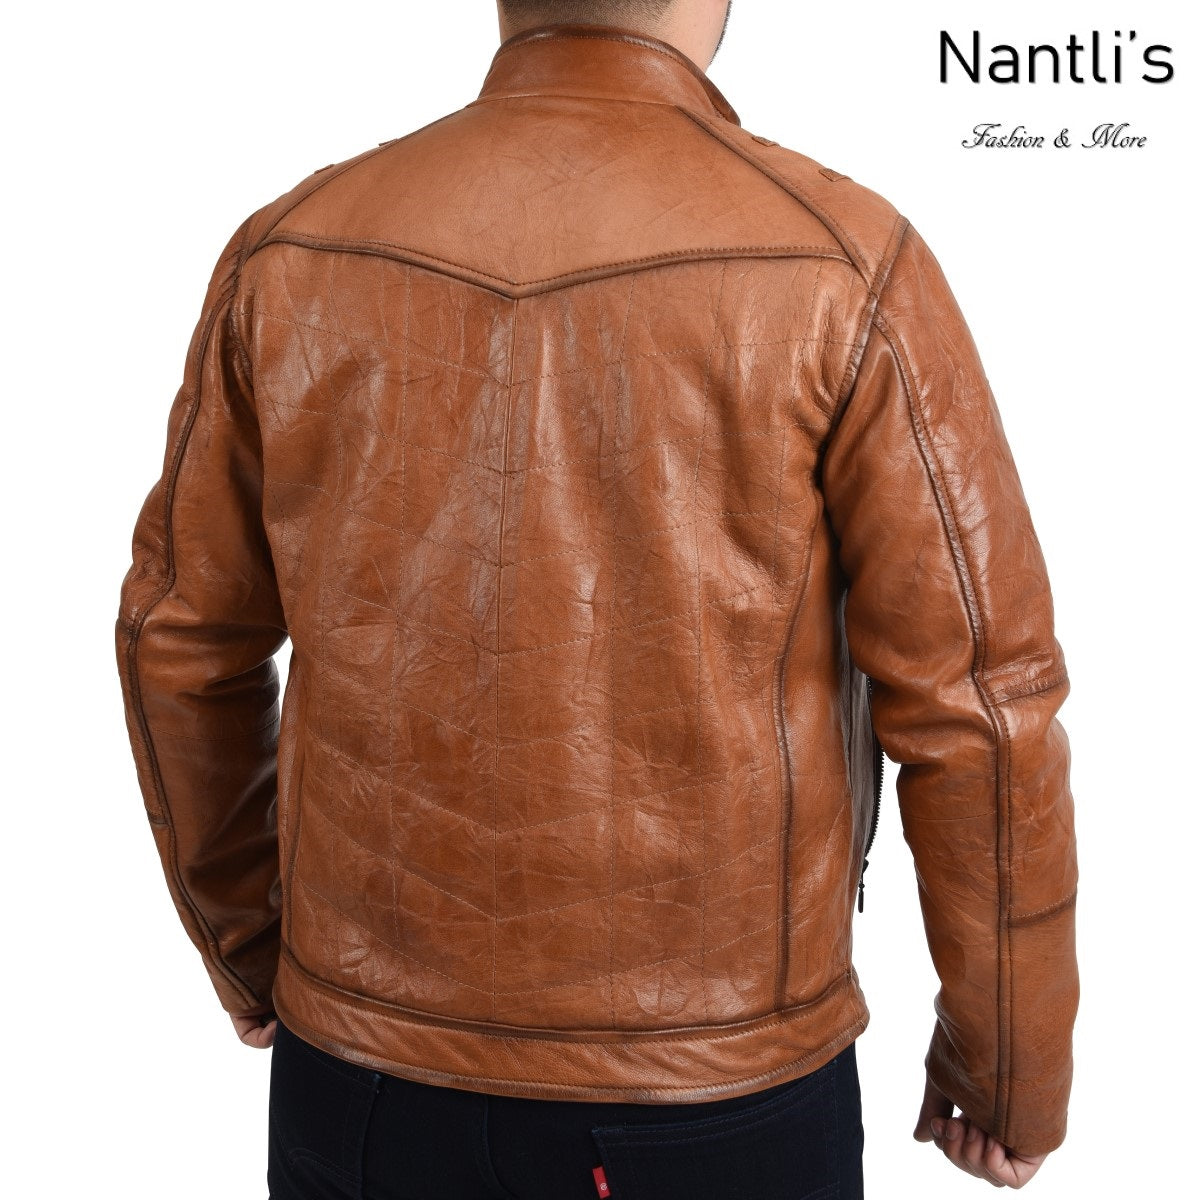 Chamarra de piel para Hombre TM-WD1818 Leather Jacket for Men Rear View